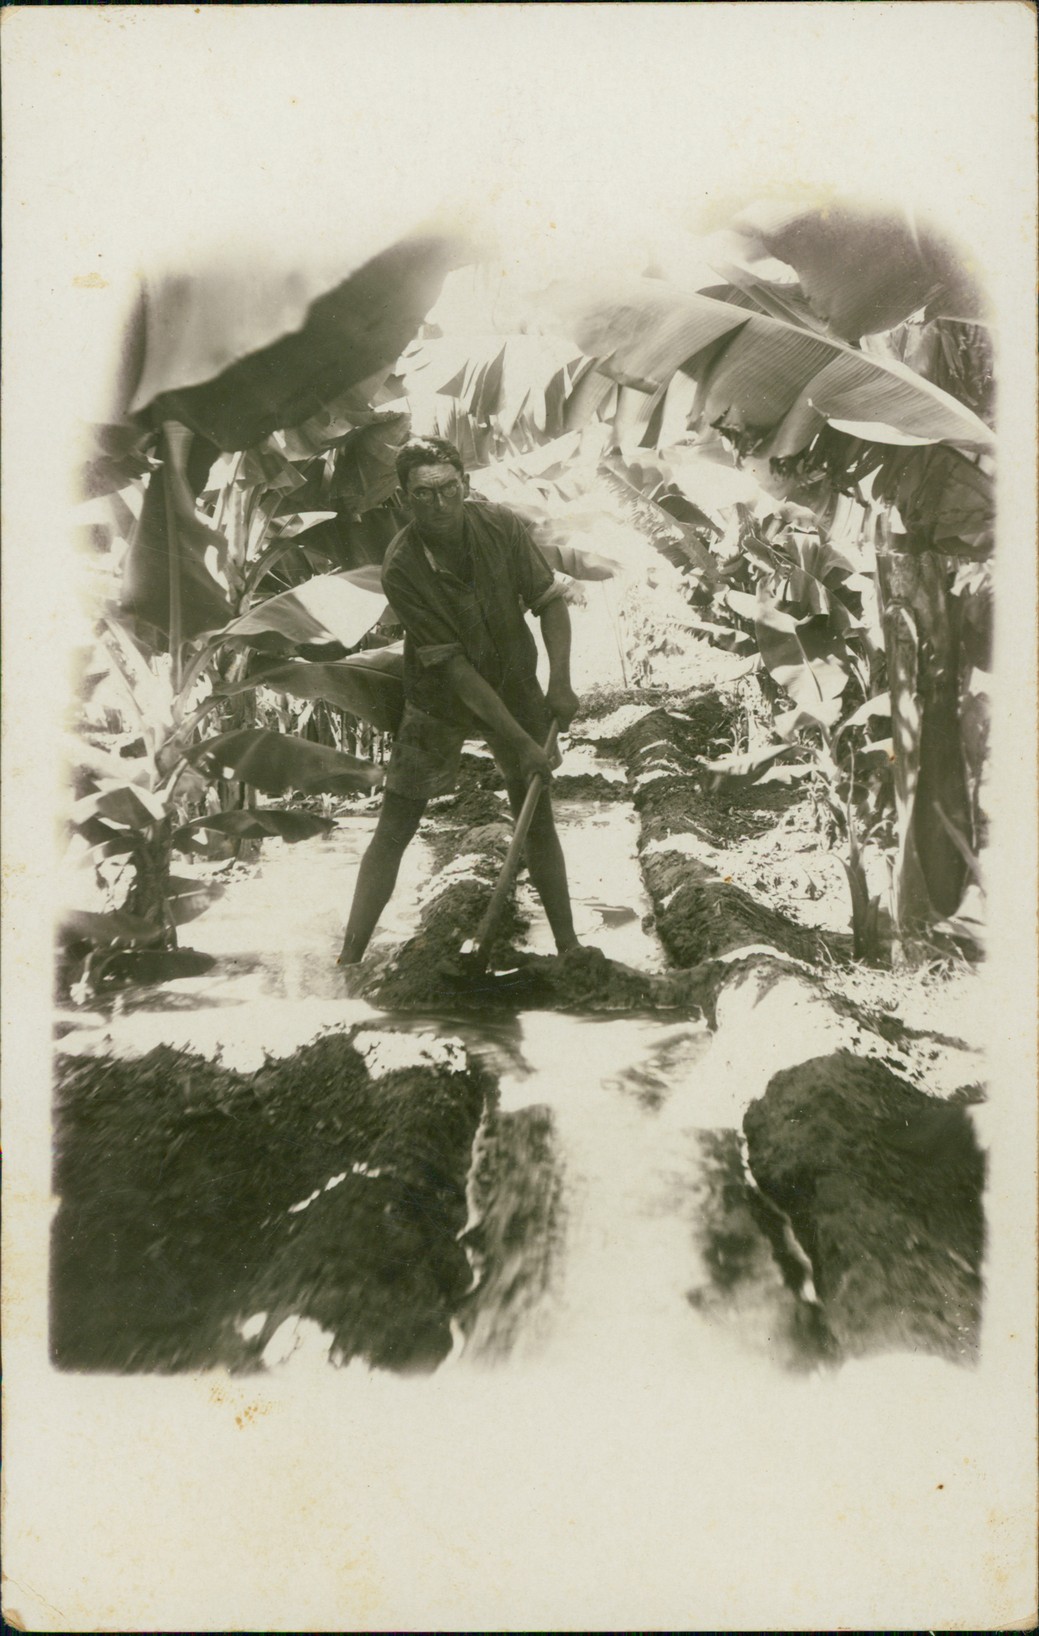 דוד הירשהורן חופר תעלות במטע הבננות שנות ה-30